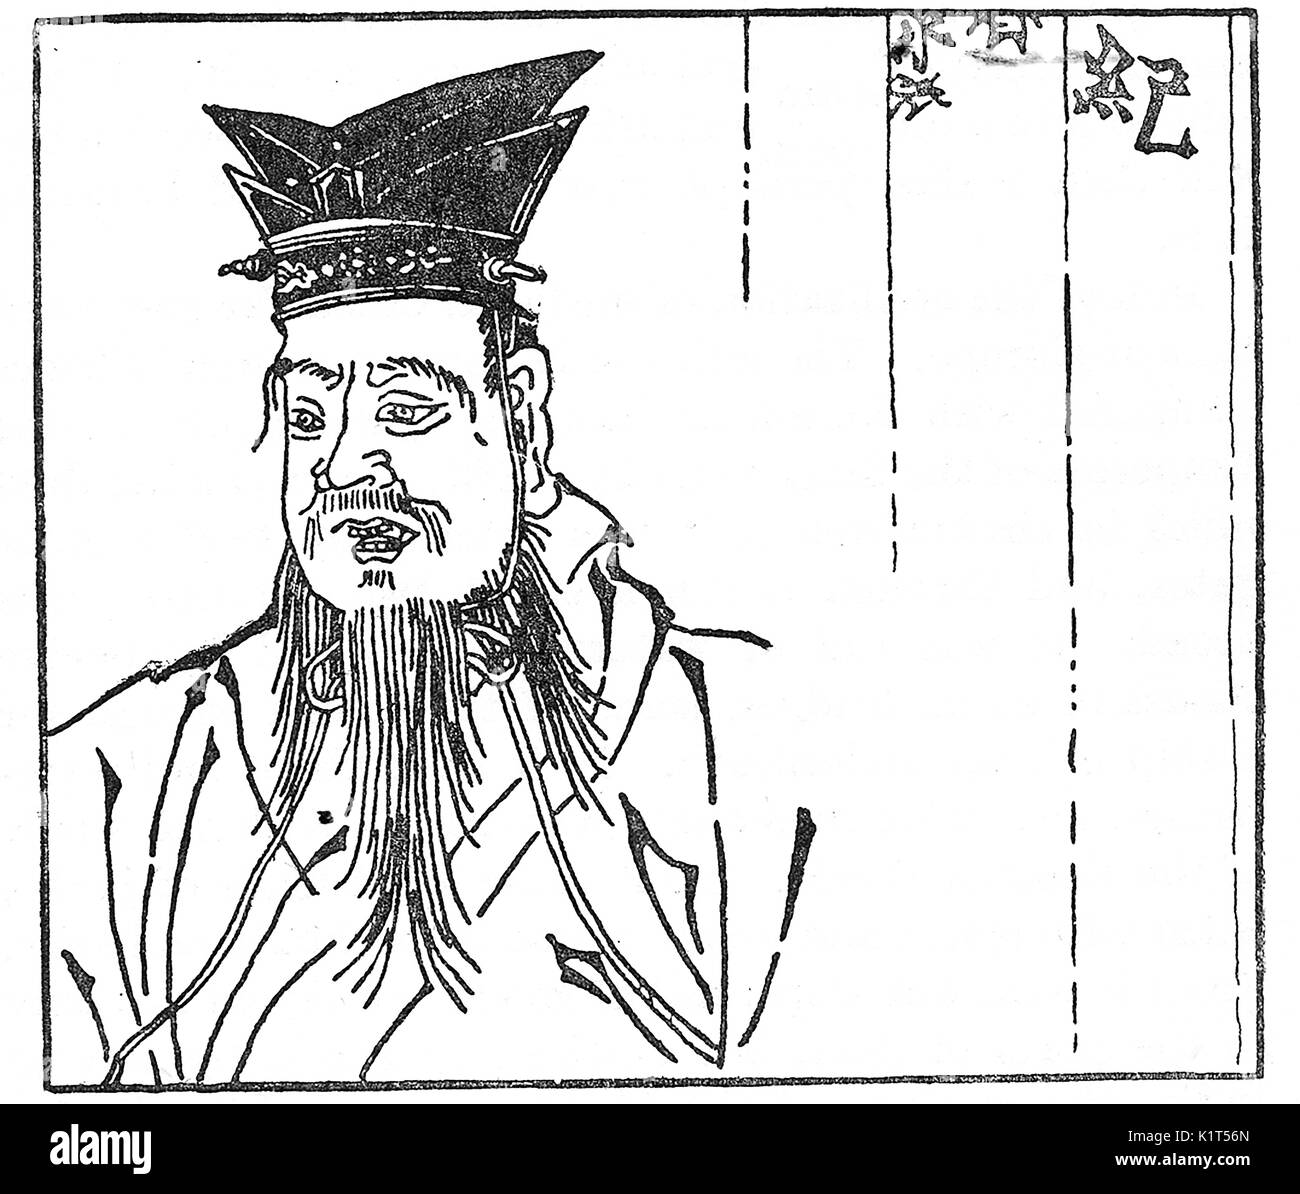 Une gravure sur bois portrait du philosophe chinois Confucius (Kong Qiu) de 'La famille Paroles de Confucius' imprimé en caractères mobiles en Corée en 1300 AD Banque D'Images